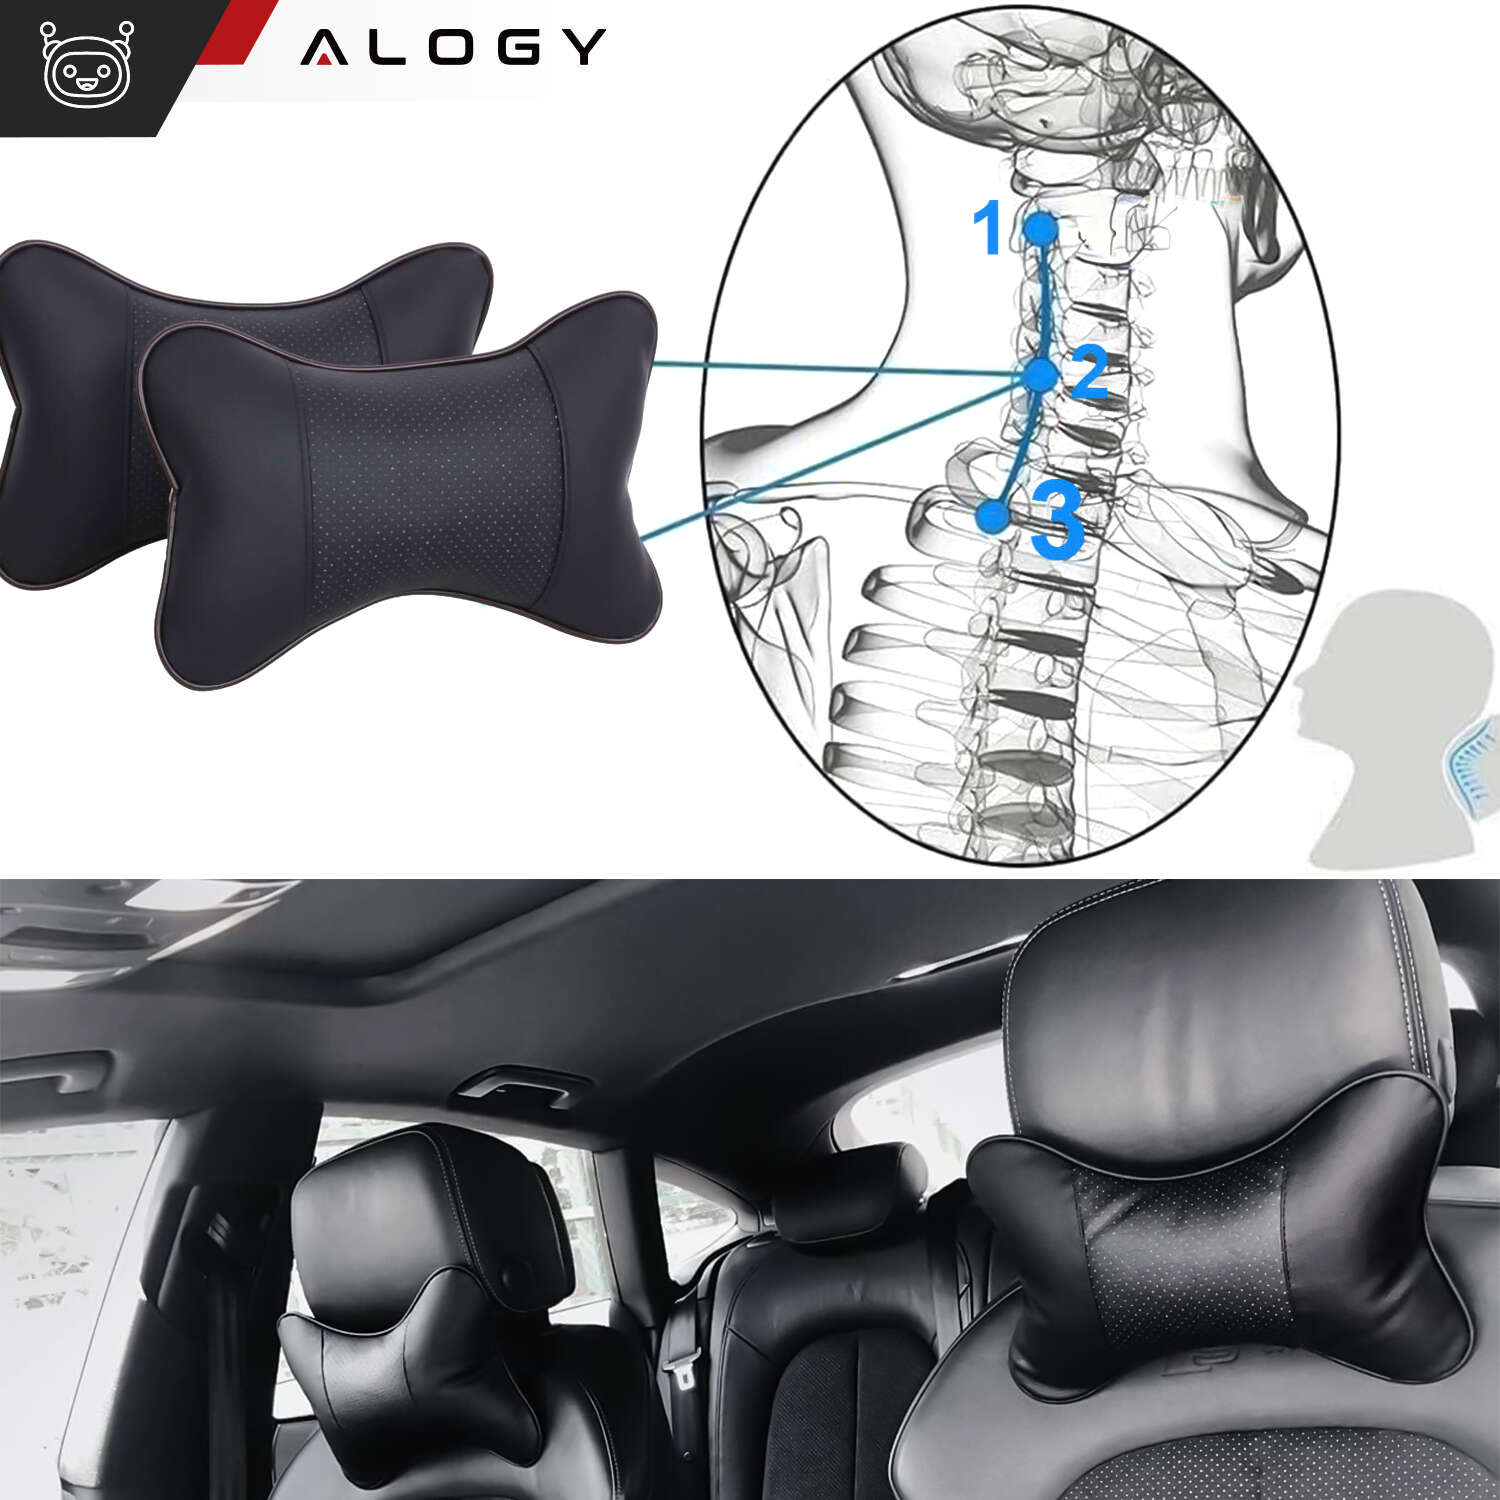 Kaufe Ergonomische Knochen Auto Sitz Kopf Nackenstütze Kissen